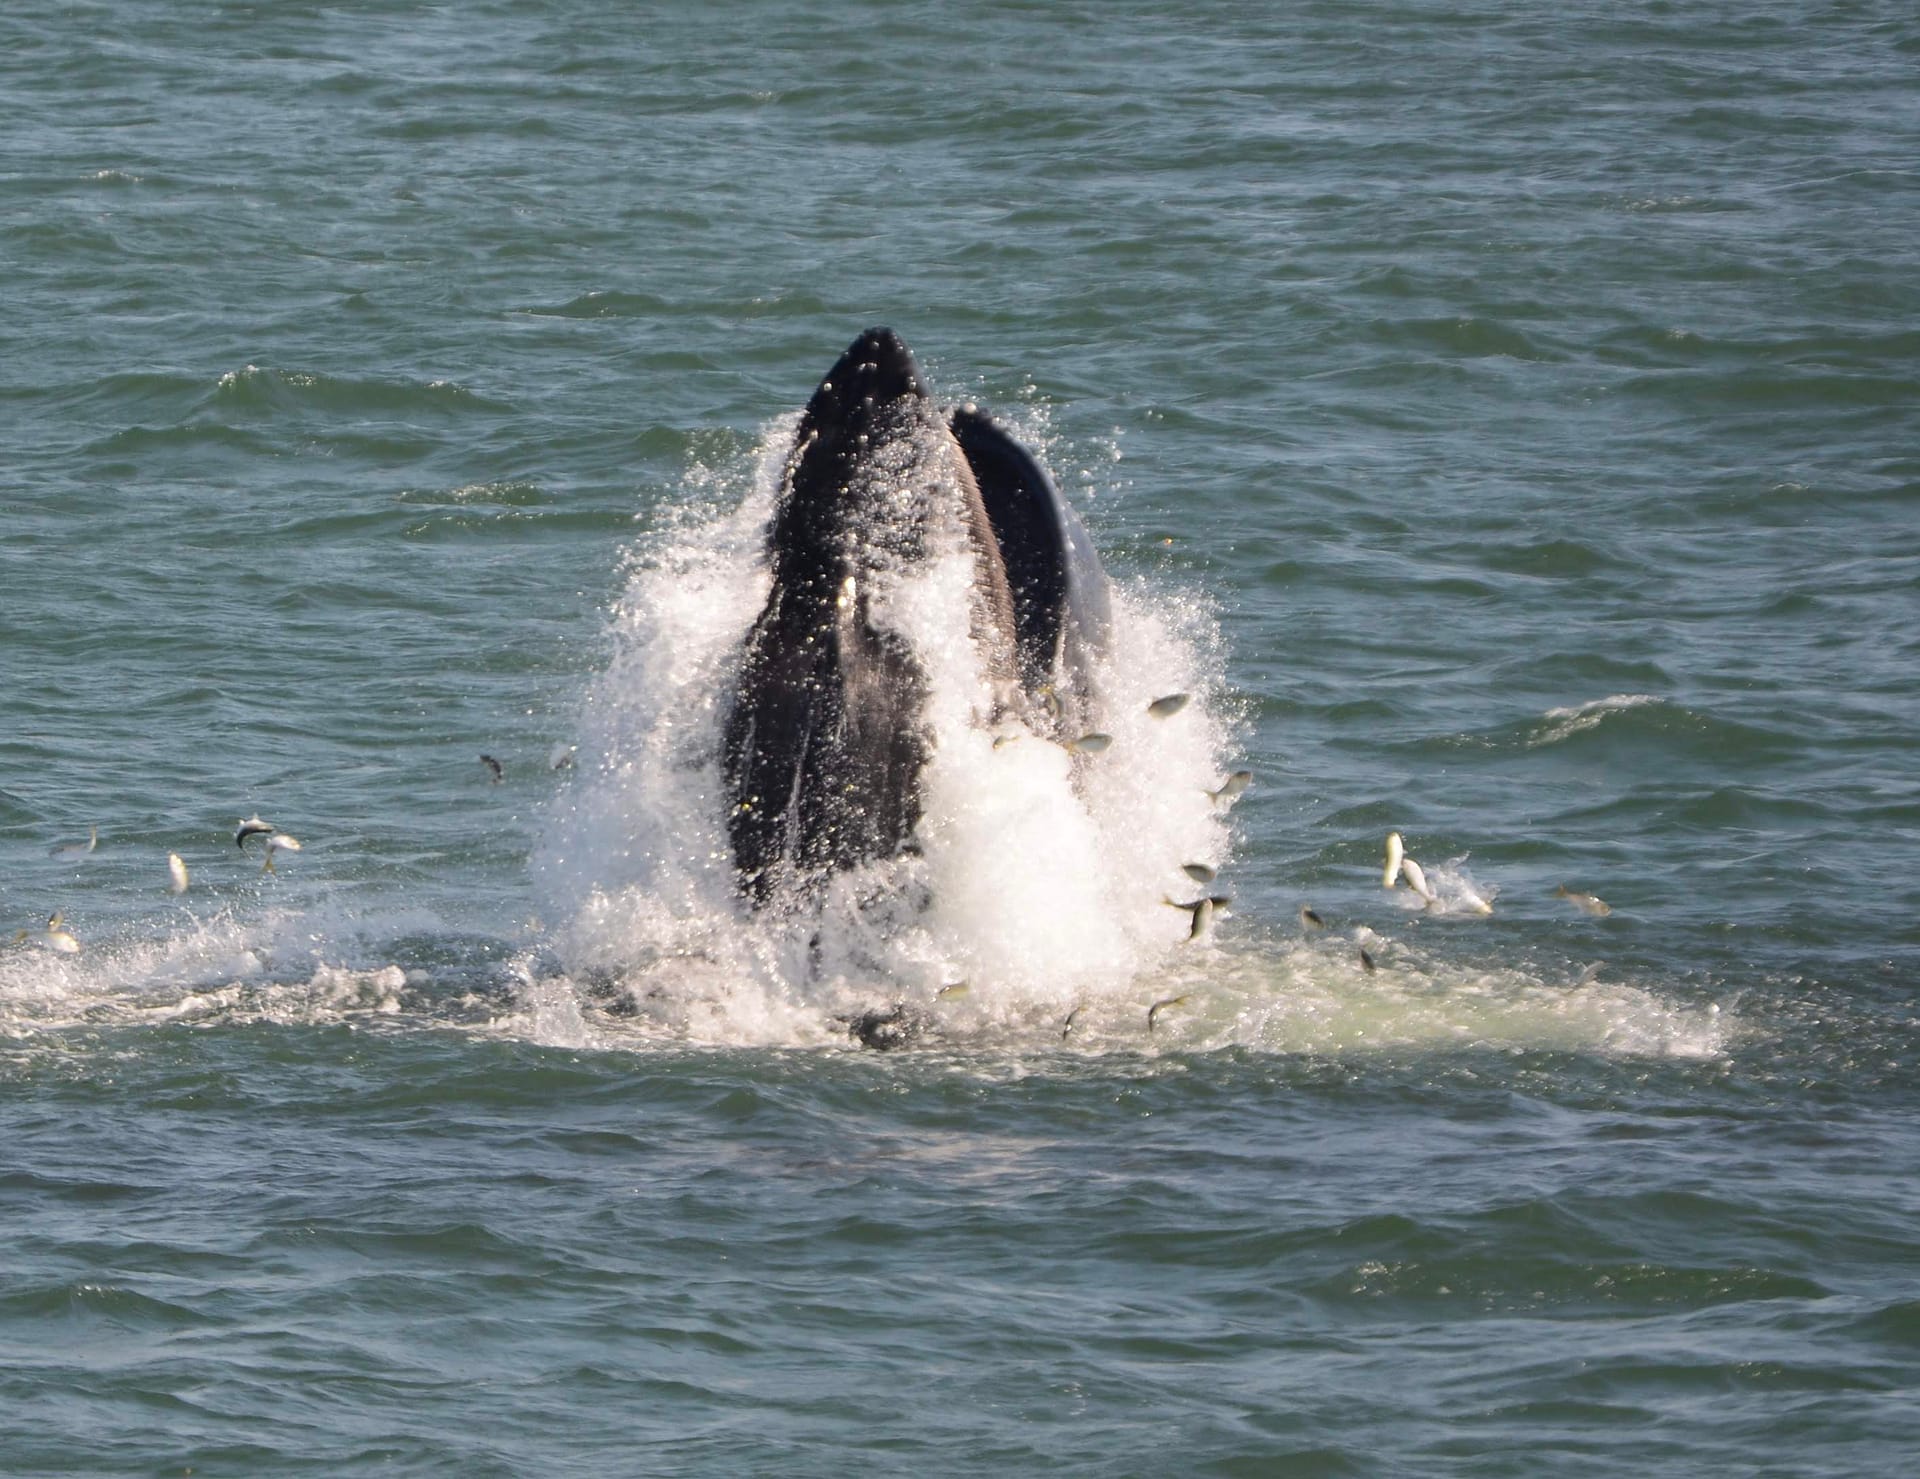 Humpback Whale 15 lunge feeding